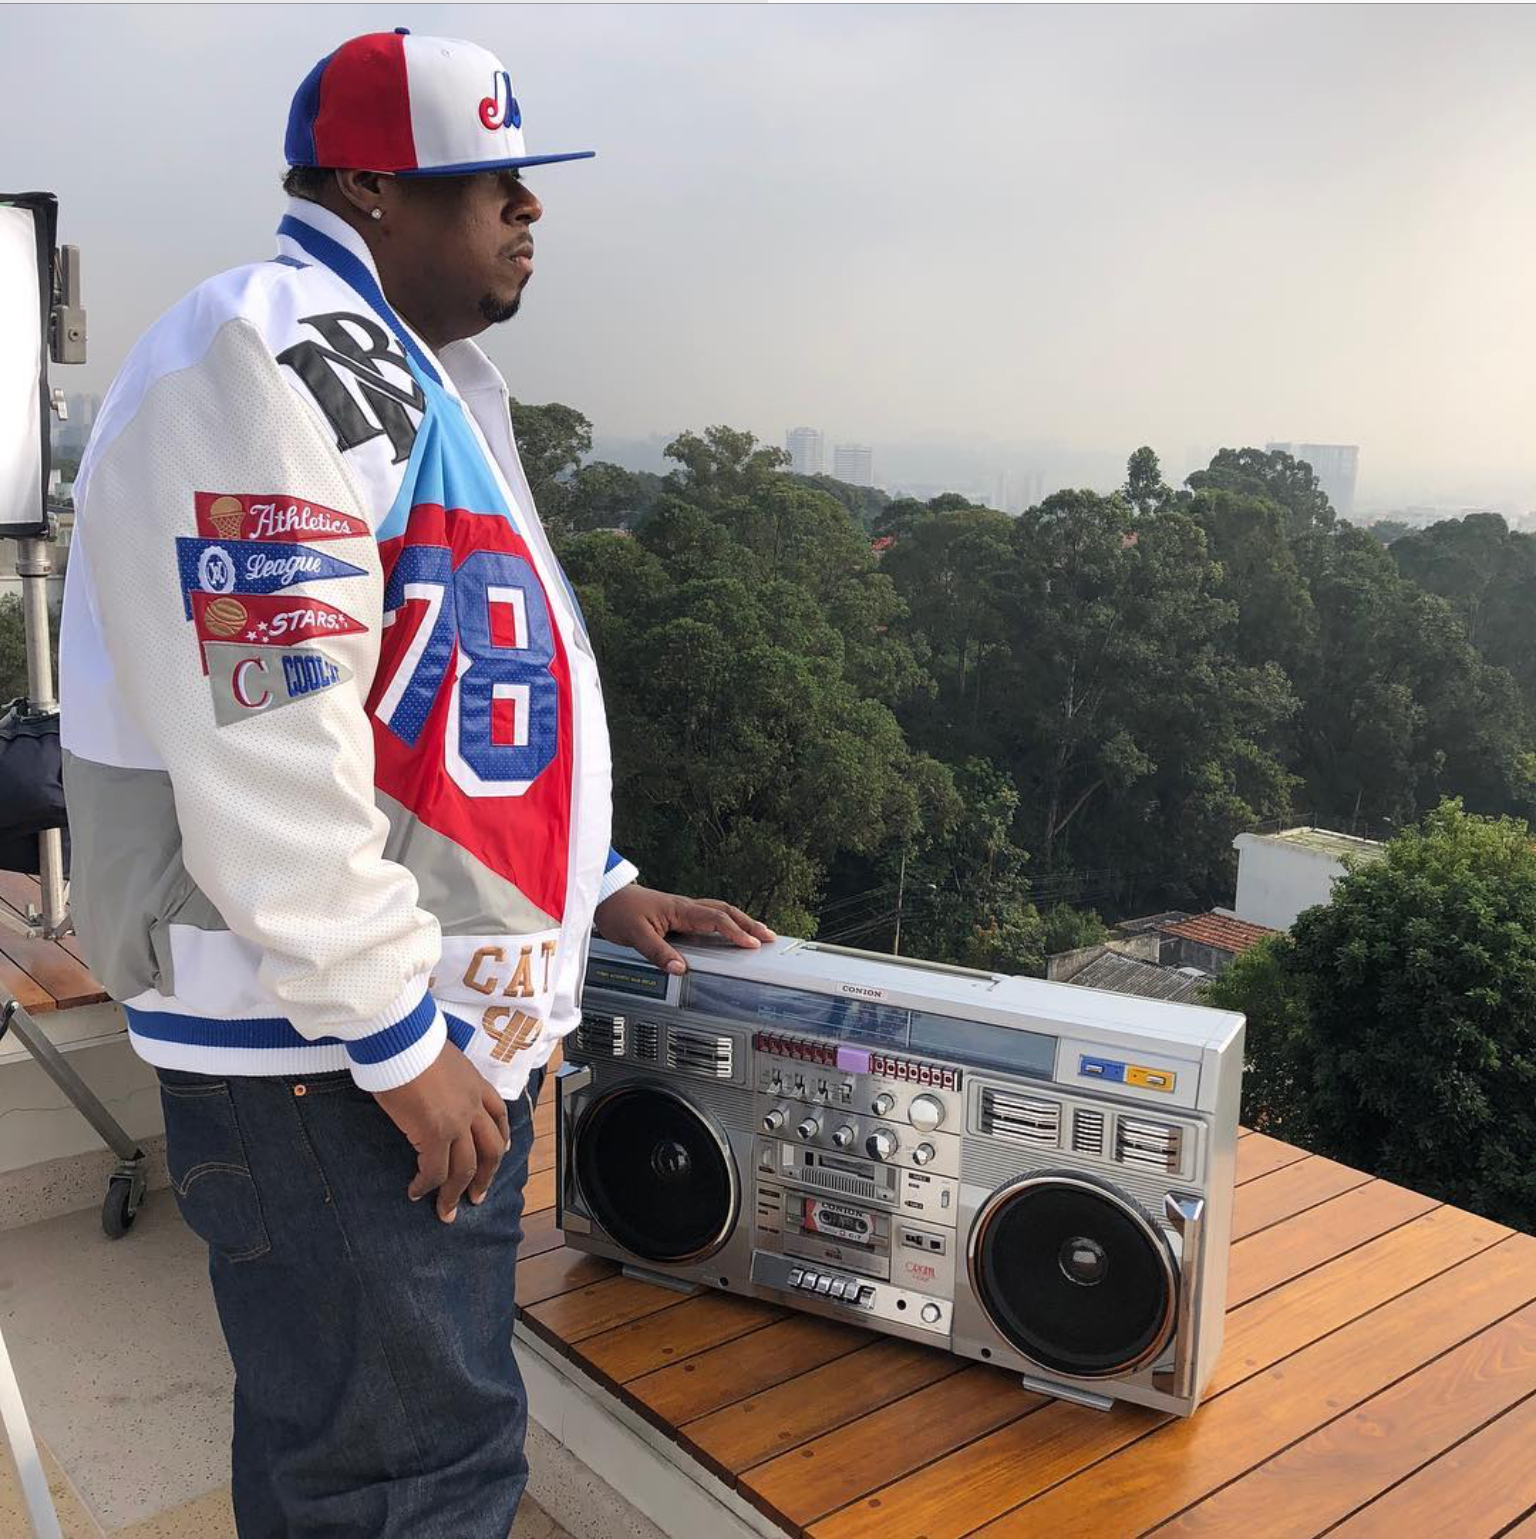 Stevie B participa de projeto inédito de funk brasileiro ao lado do DJ do 50 Cent Chubby Chub